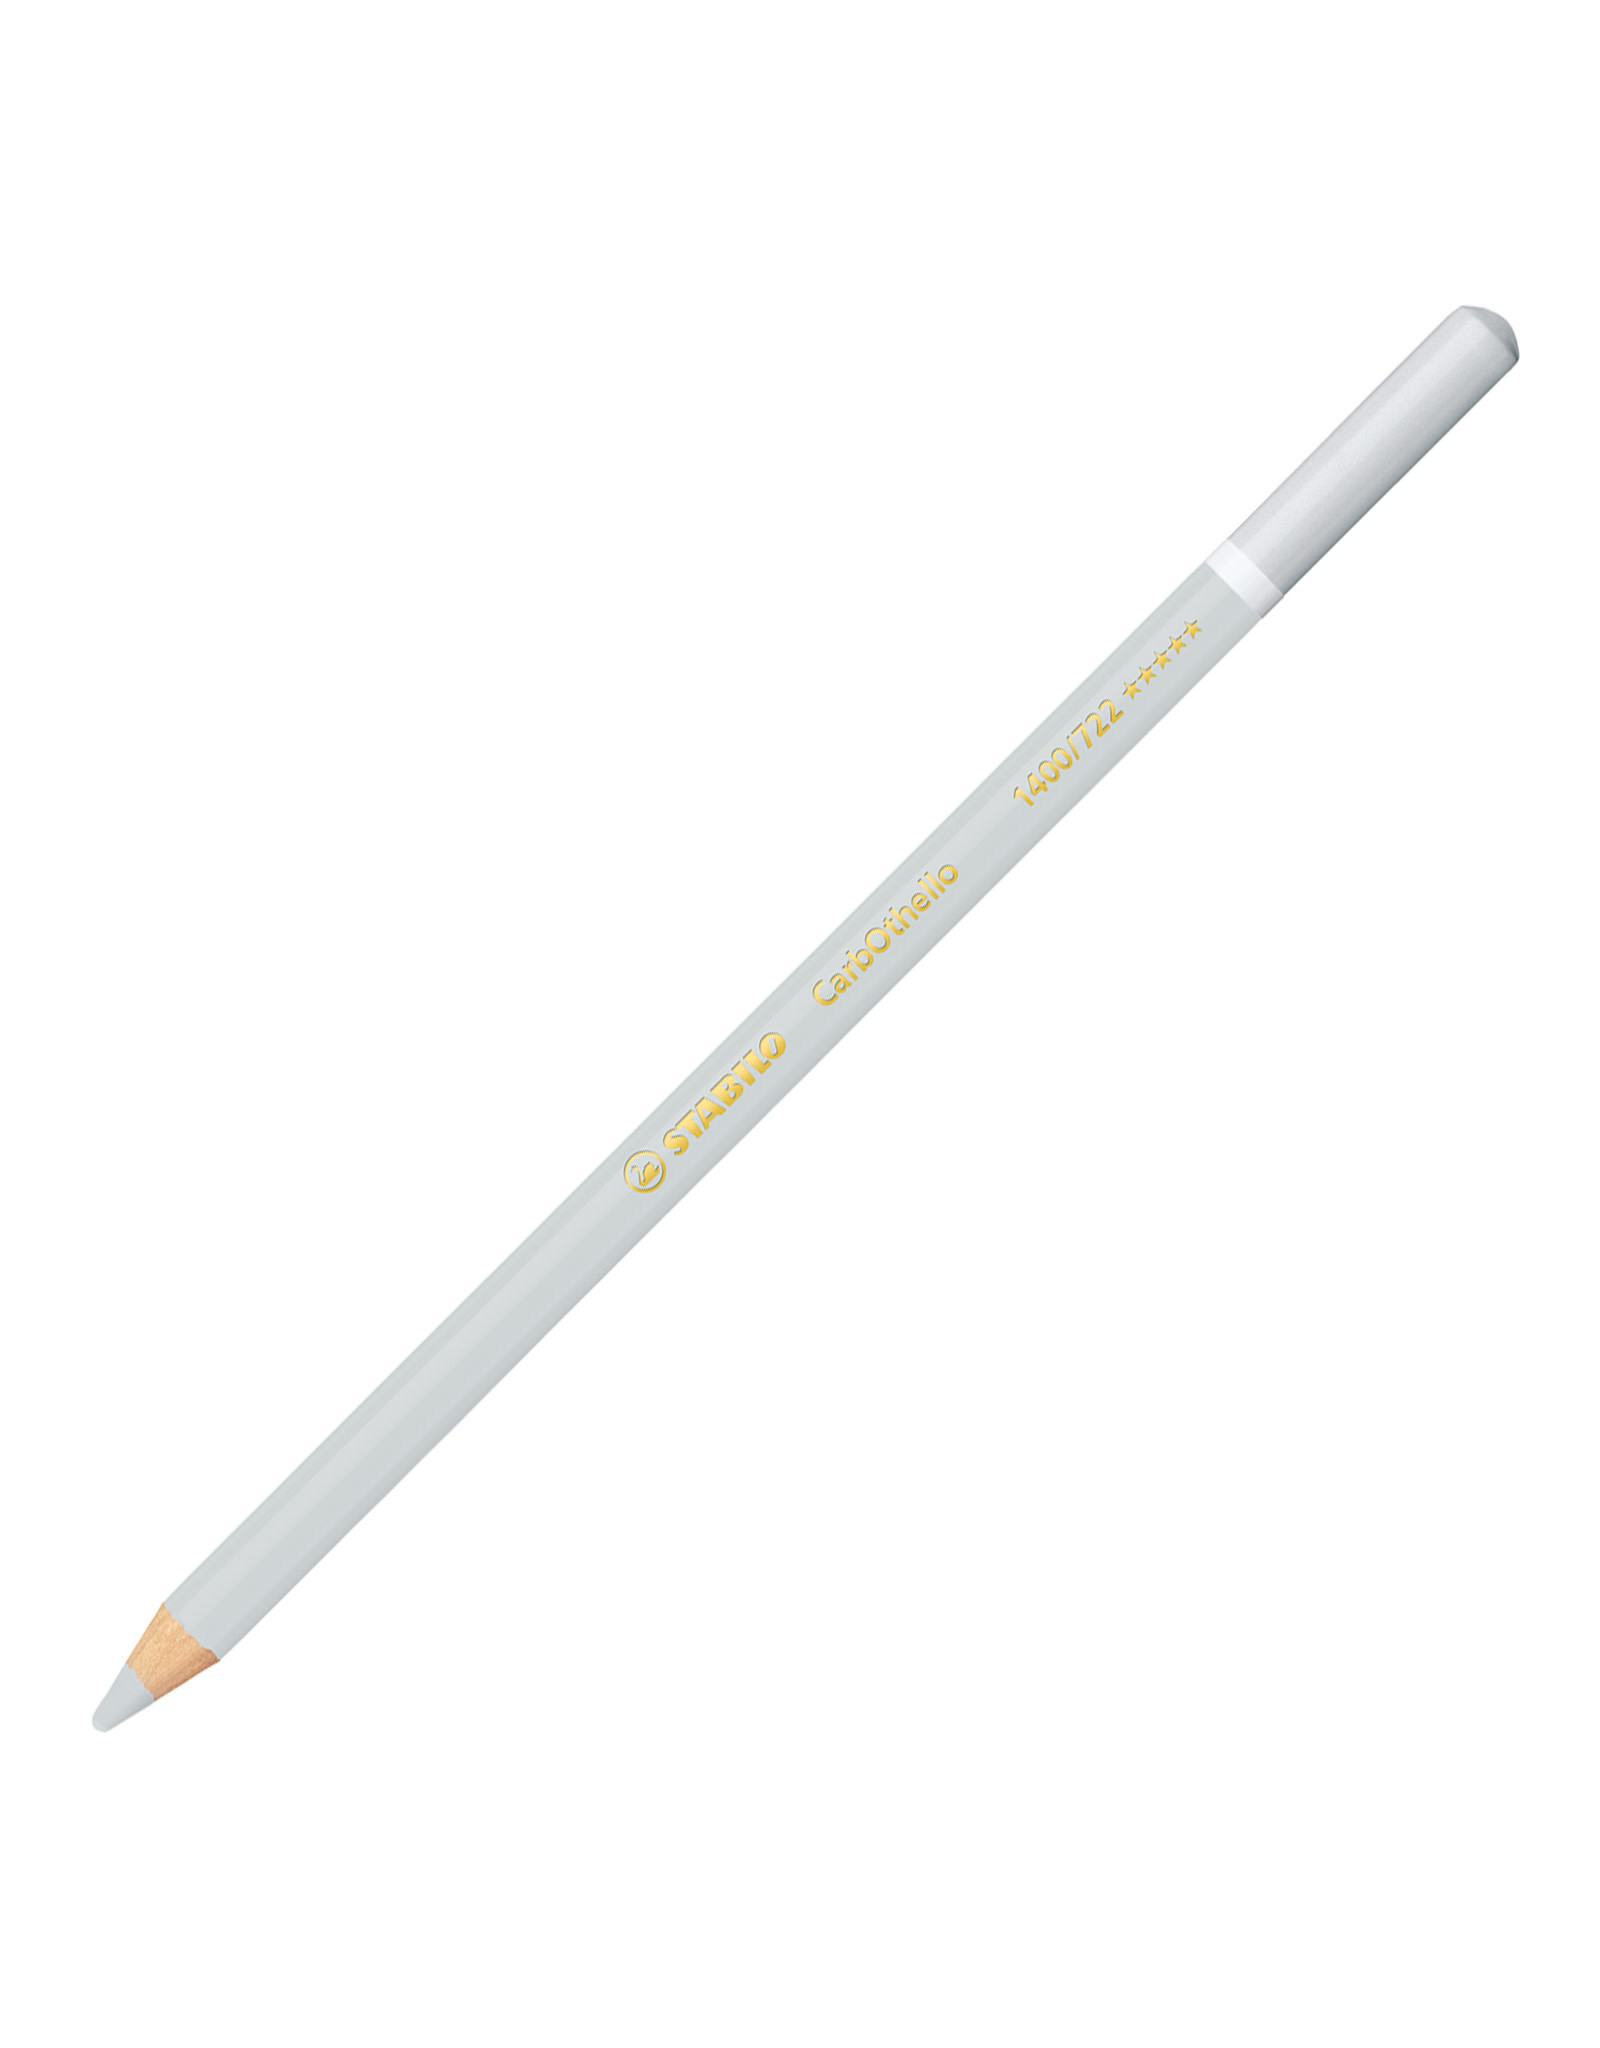 STABILO Stabilo Carbothello Pastel Pencil, Cold Grey 2